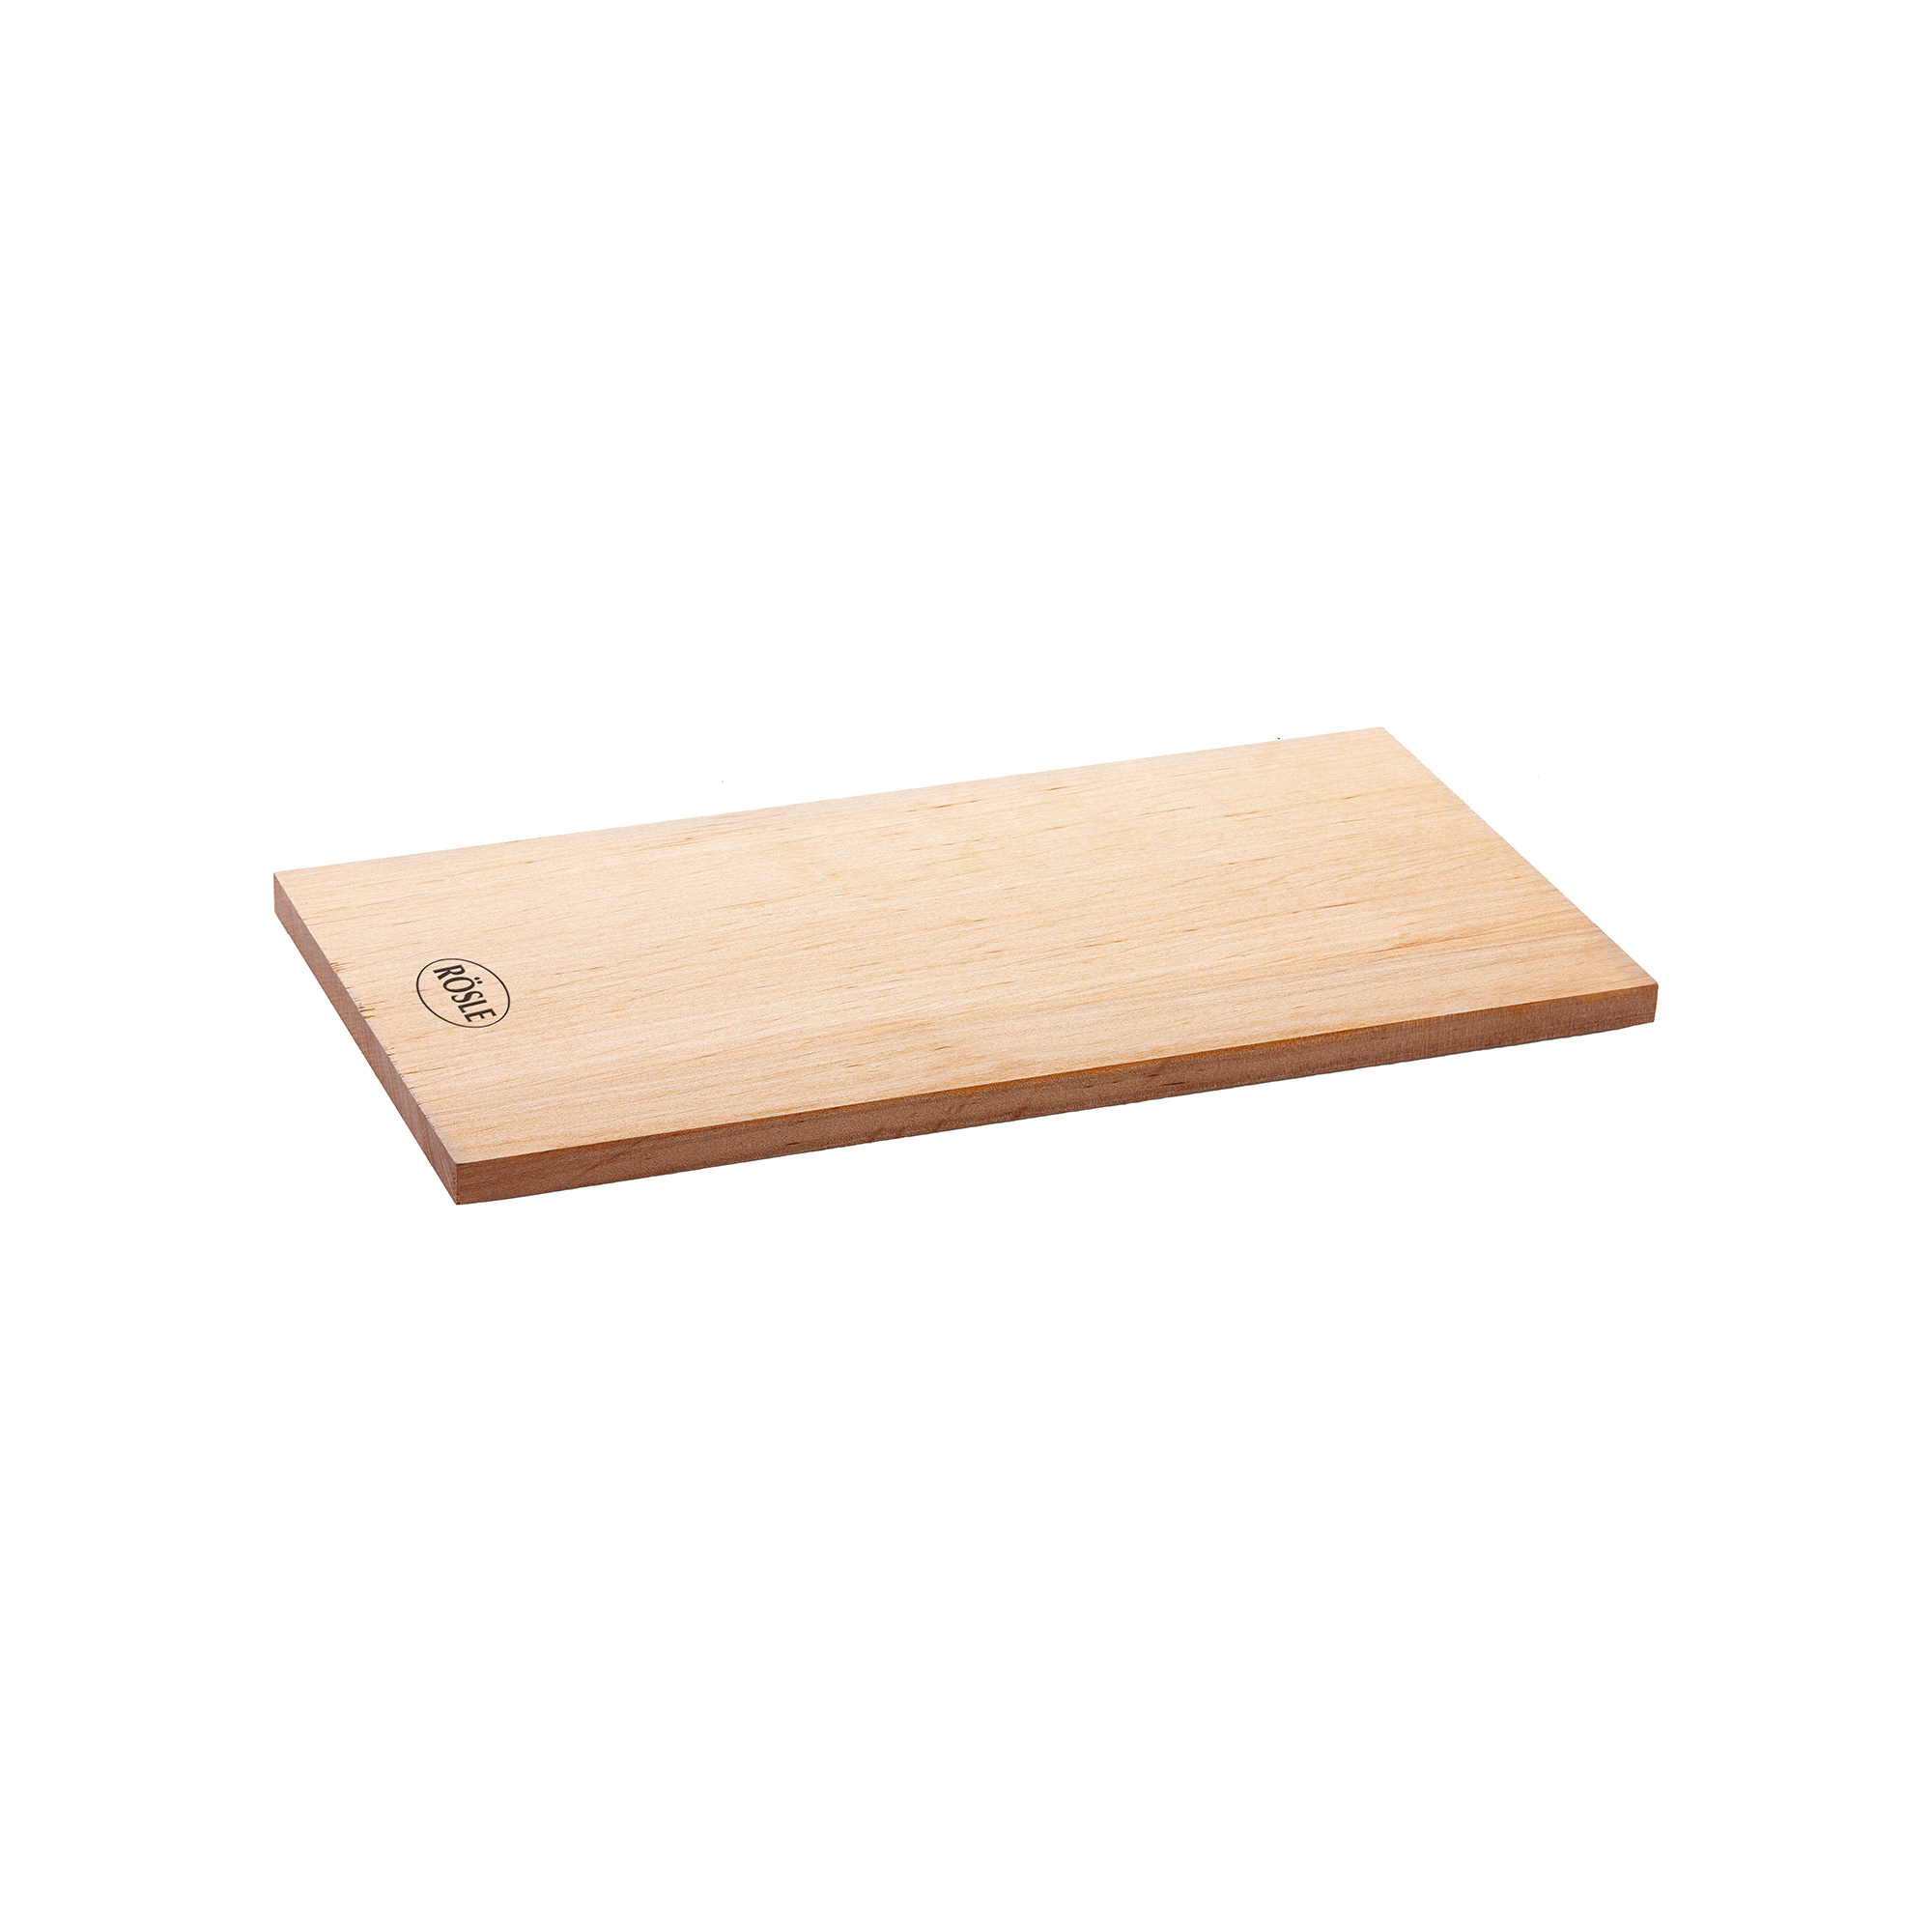 Aroma Planks Alder 30 x 15 cm|11.8 x 5.9 in. 2 pcs